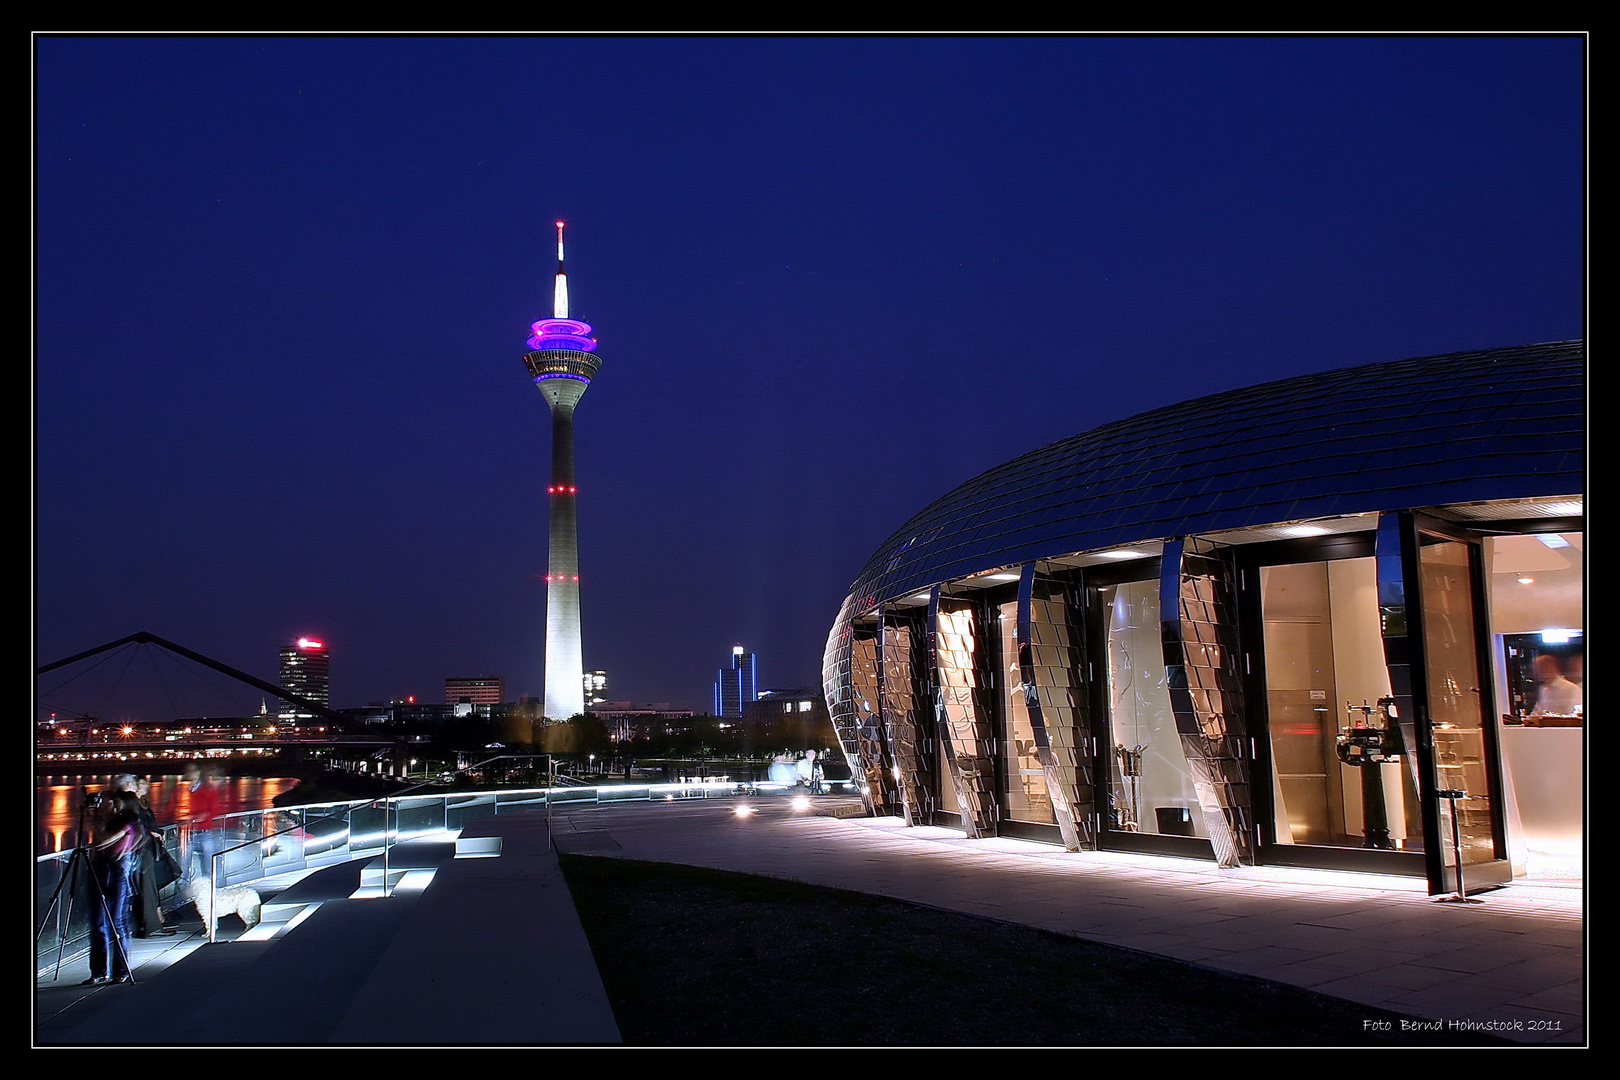 Fotogeister erkunden das neue Hyatt im Medienhafen Düsseldorf ...